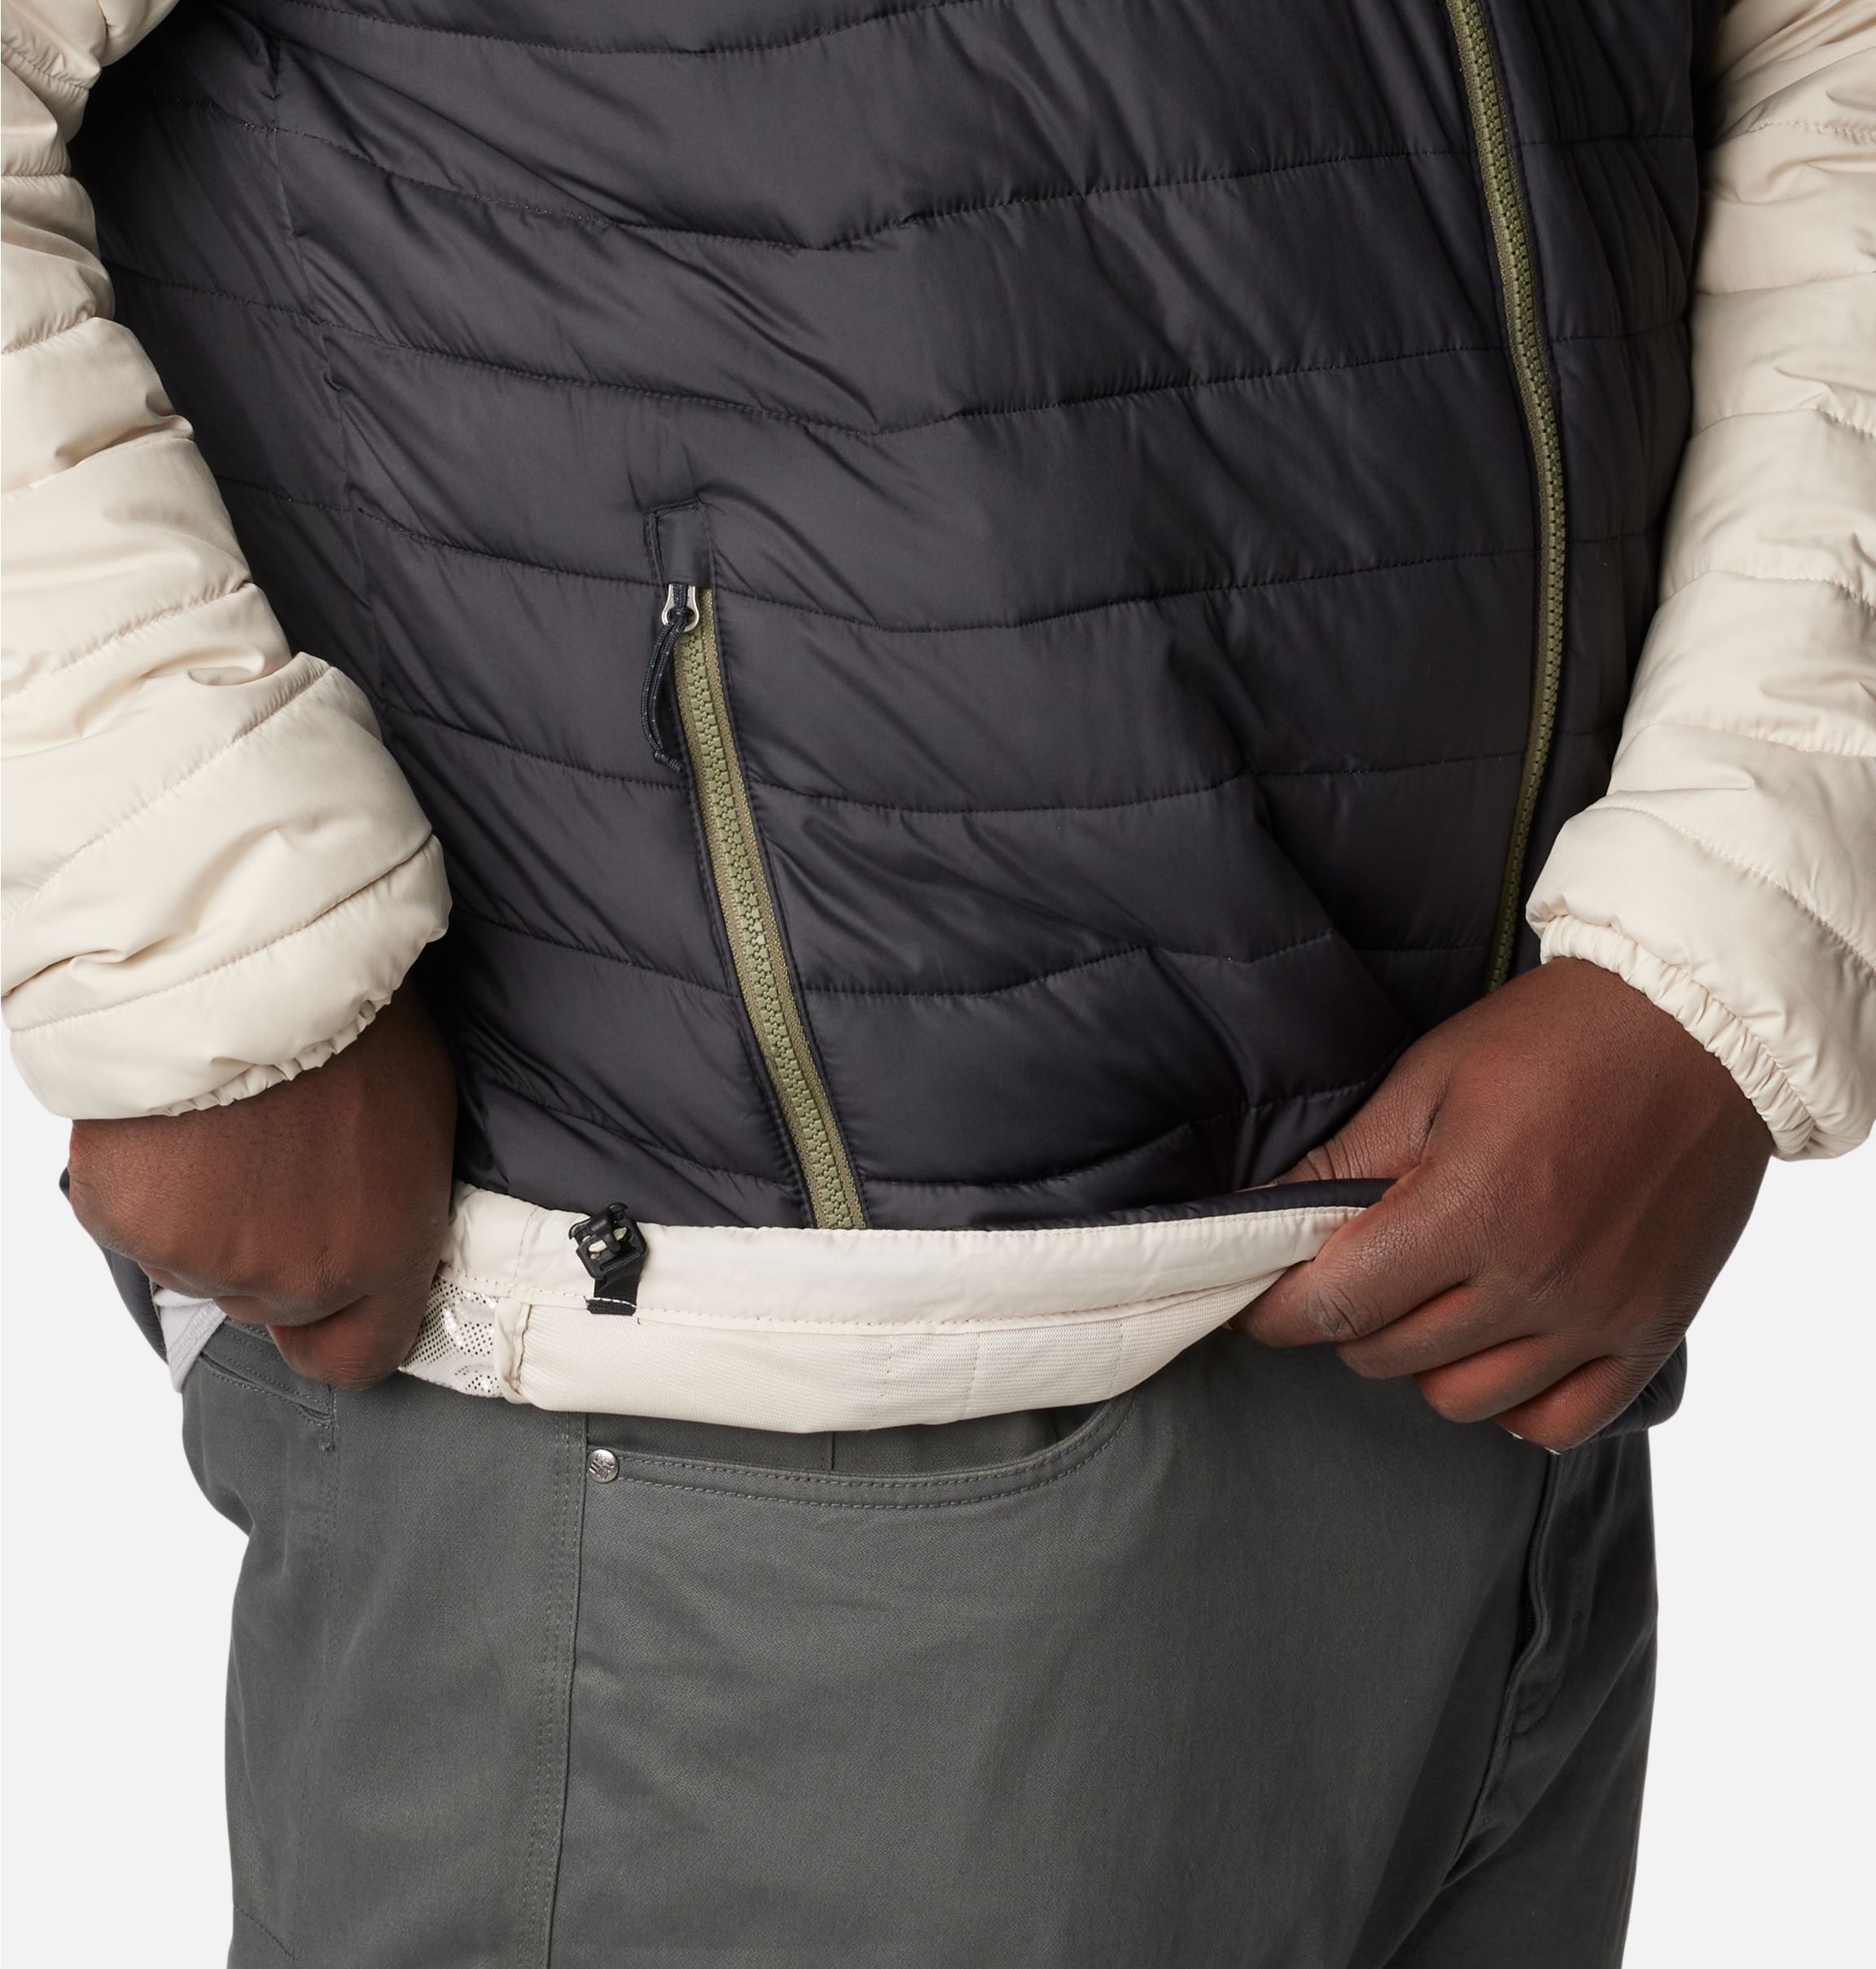 Men's Powder Lite™ Insulated Jacket – Big